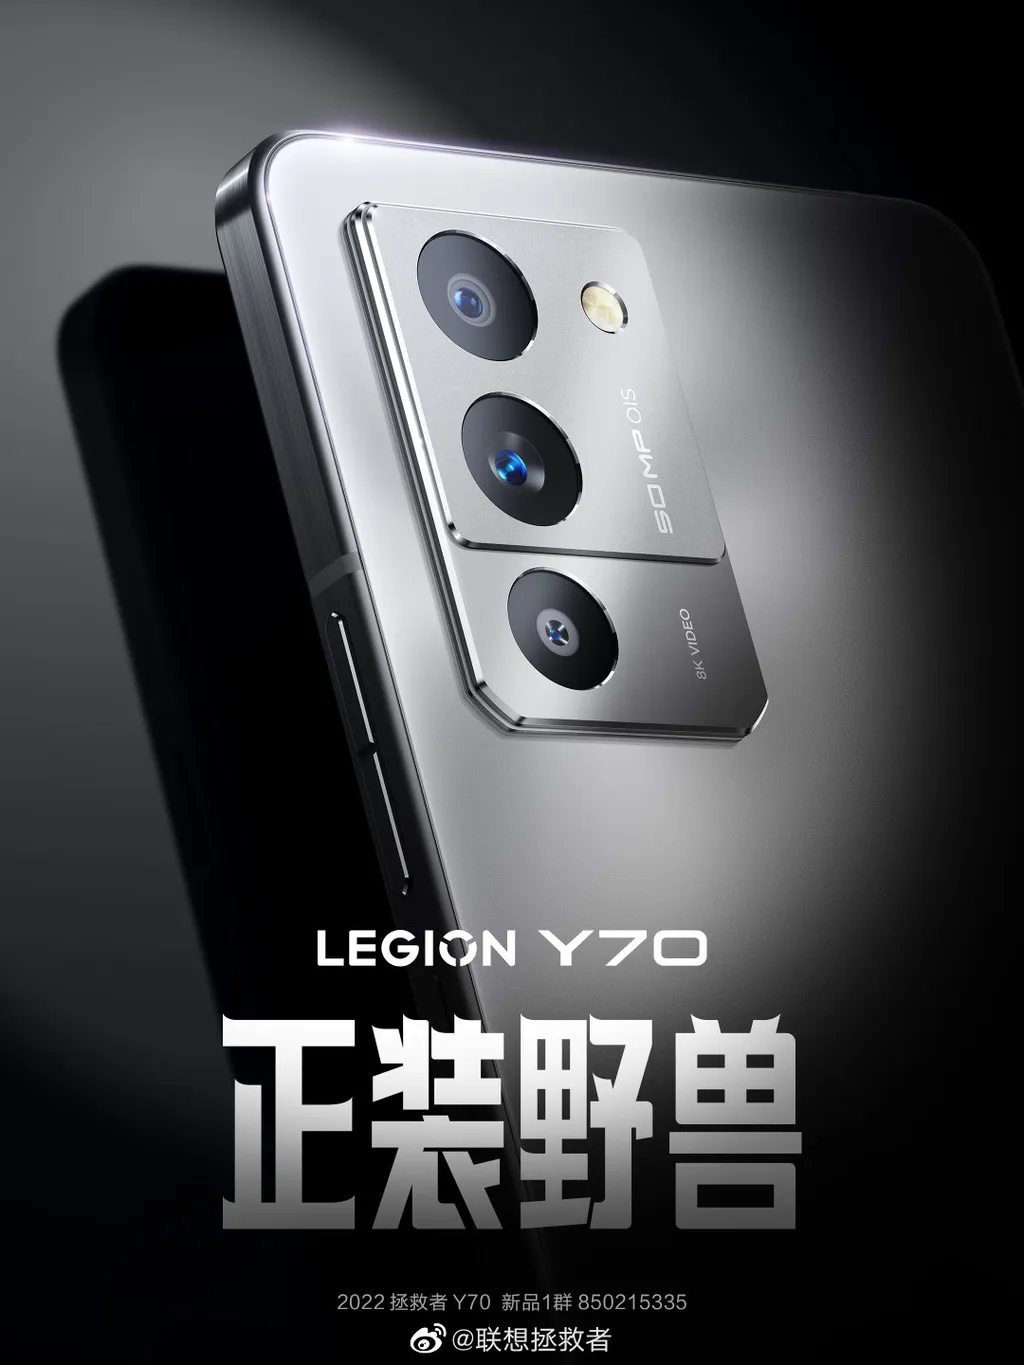 Legion Y70 apostará em especificações poderosas e visual tradicional (Imagem: Divulgação/Lenovo)